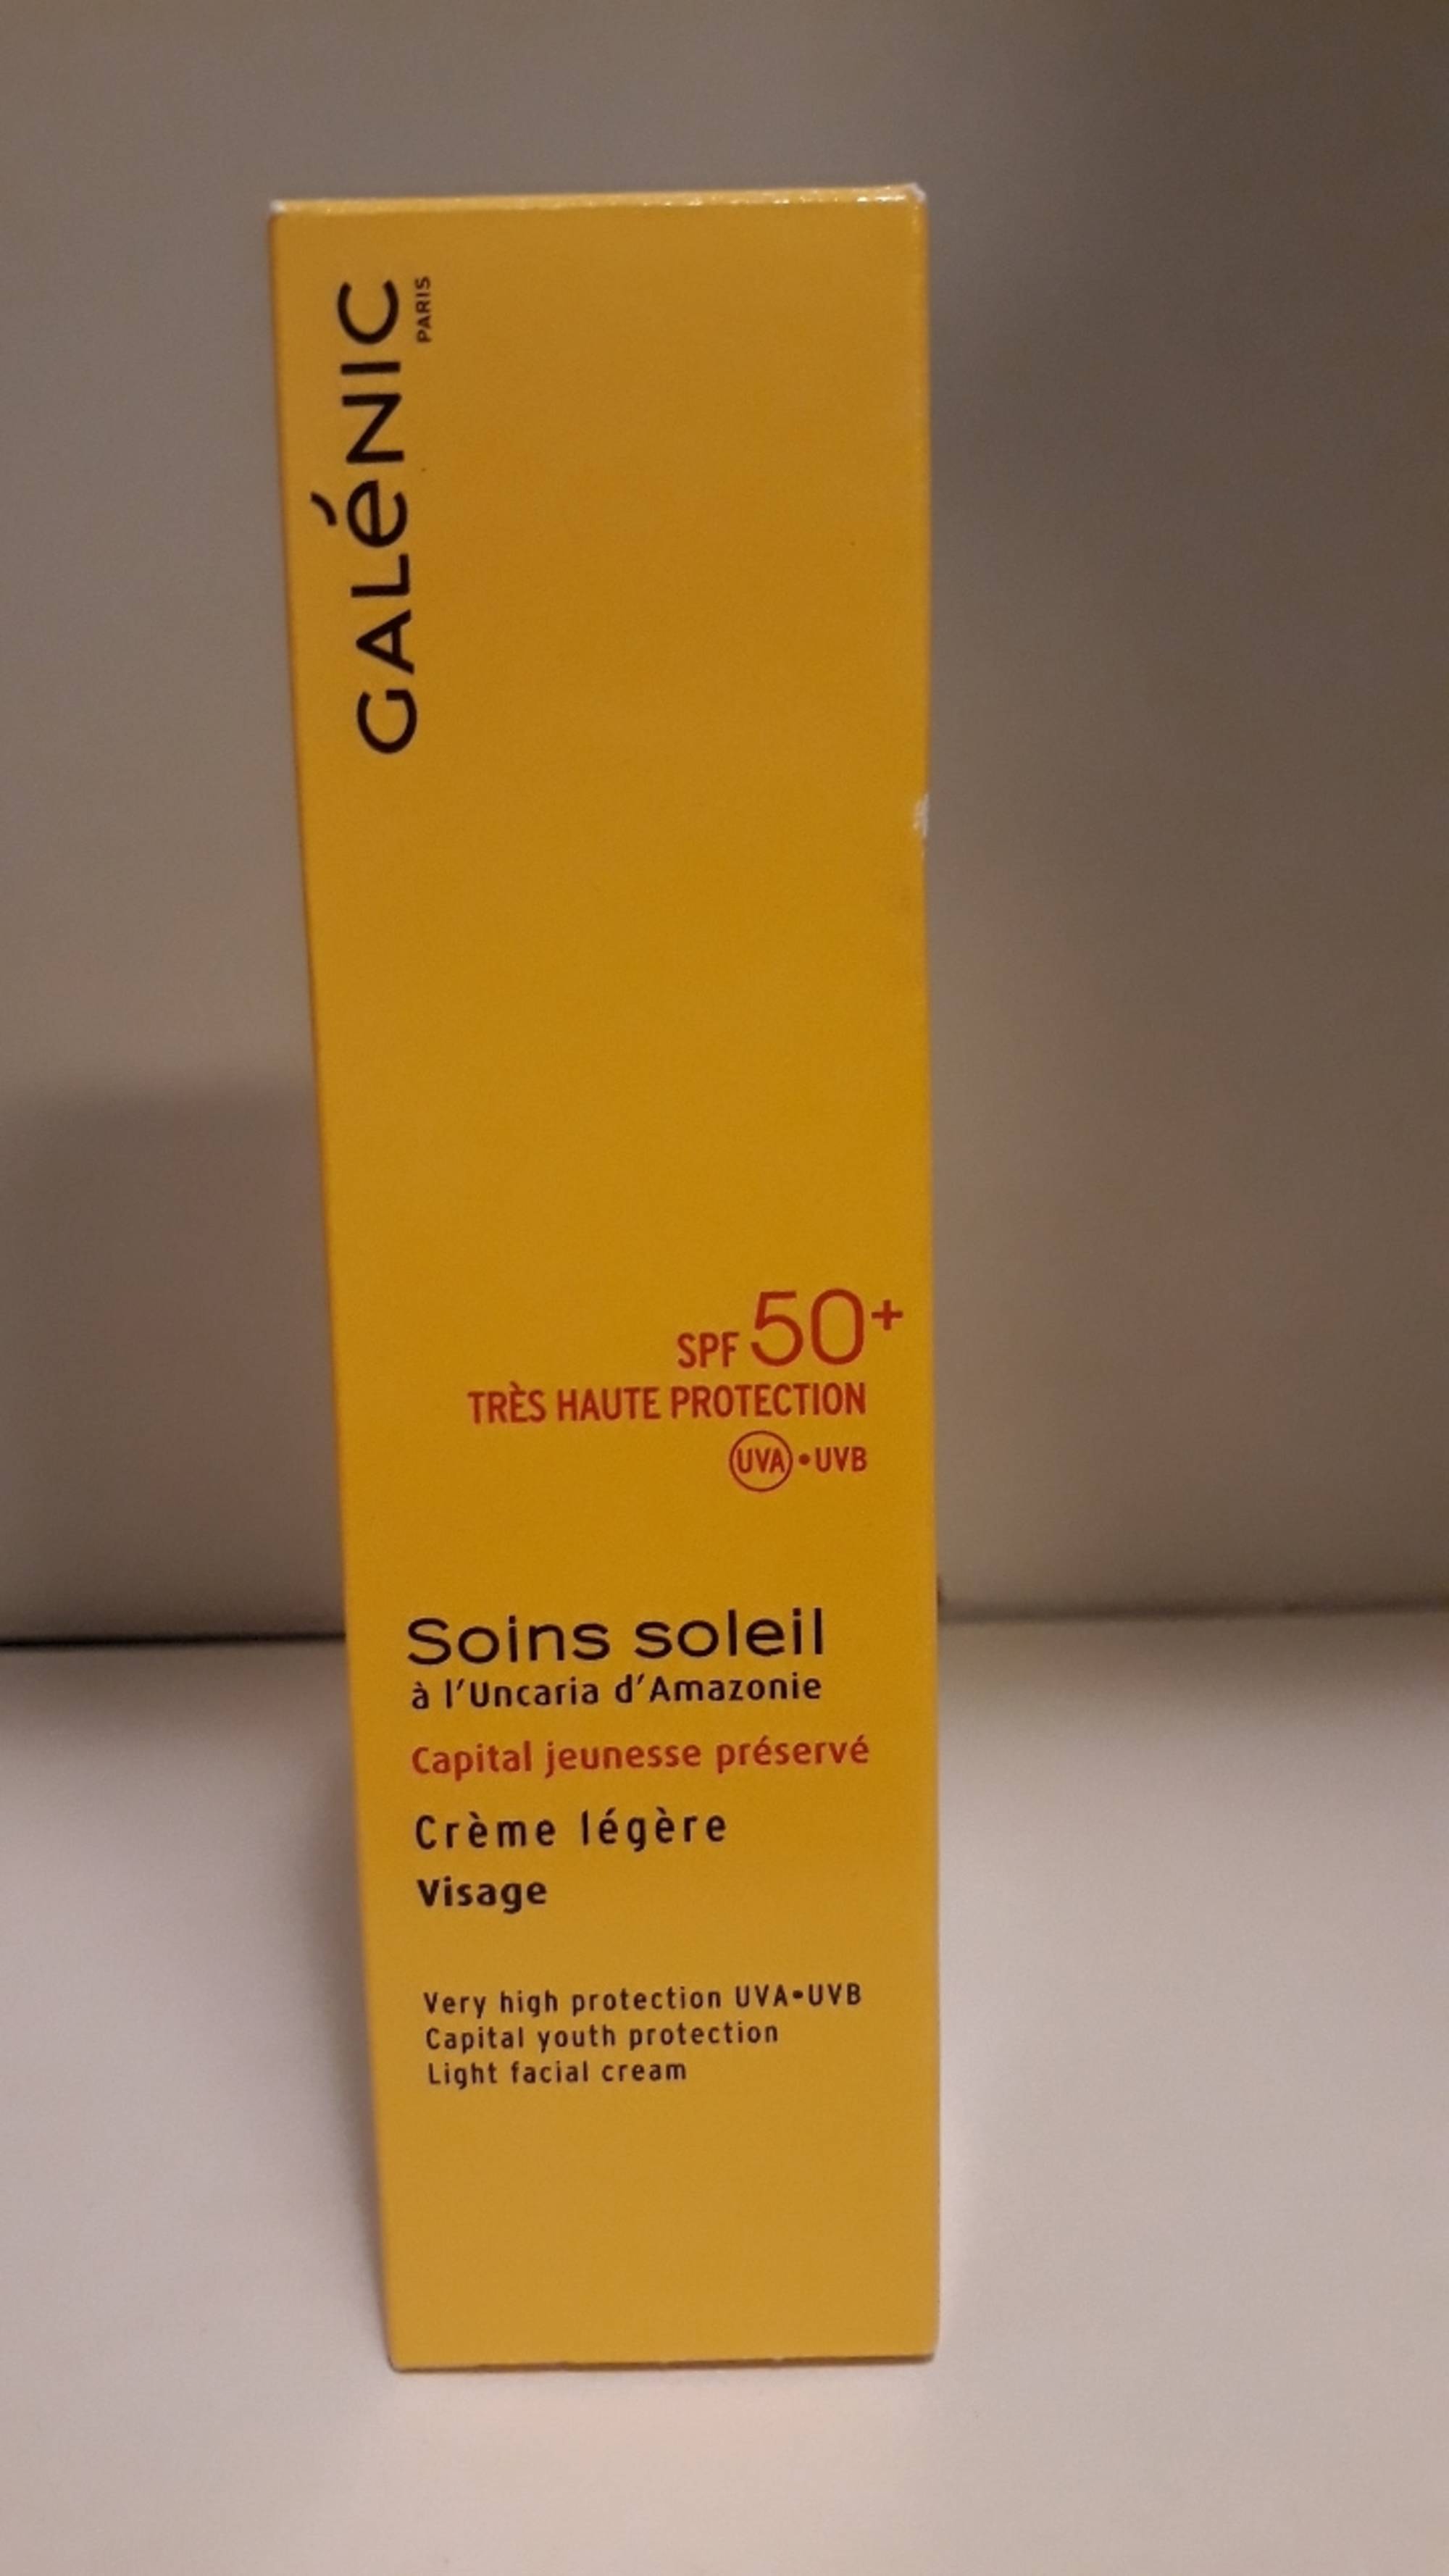 GALÉNIC - Soins soleil - Crème légère visage spf50+ 